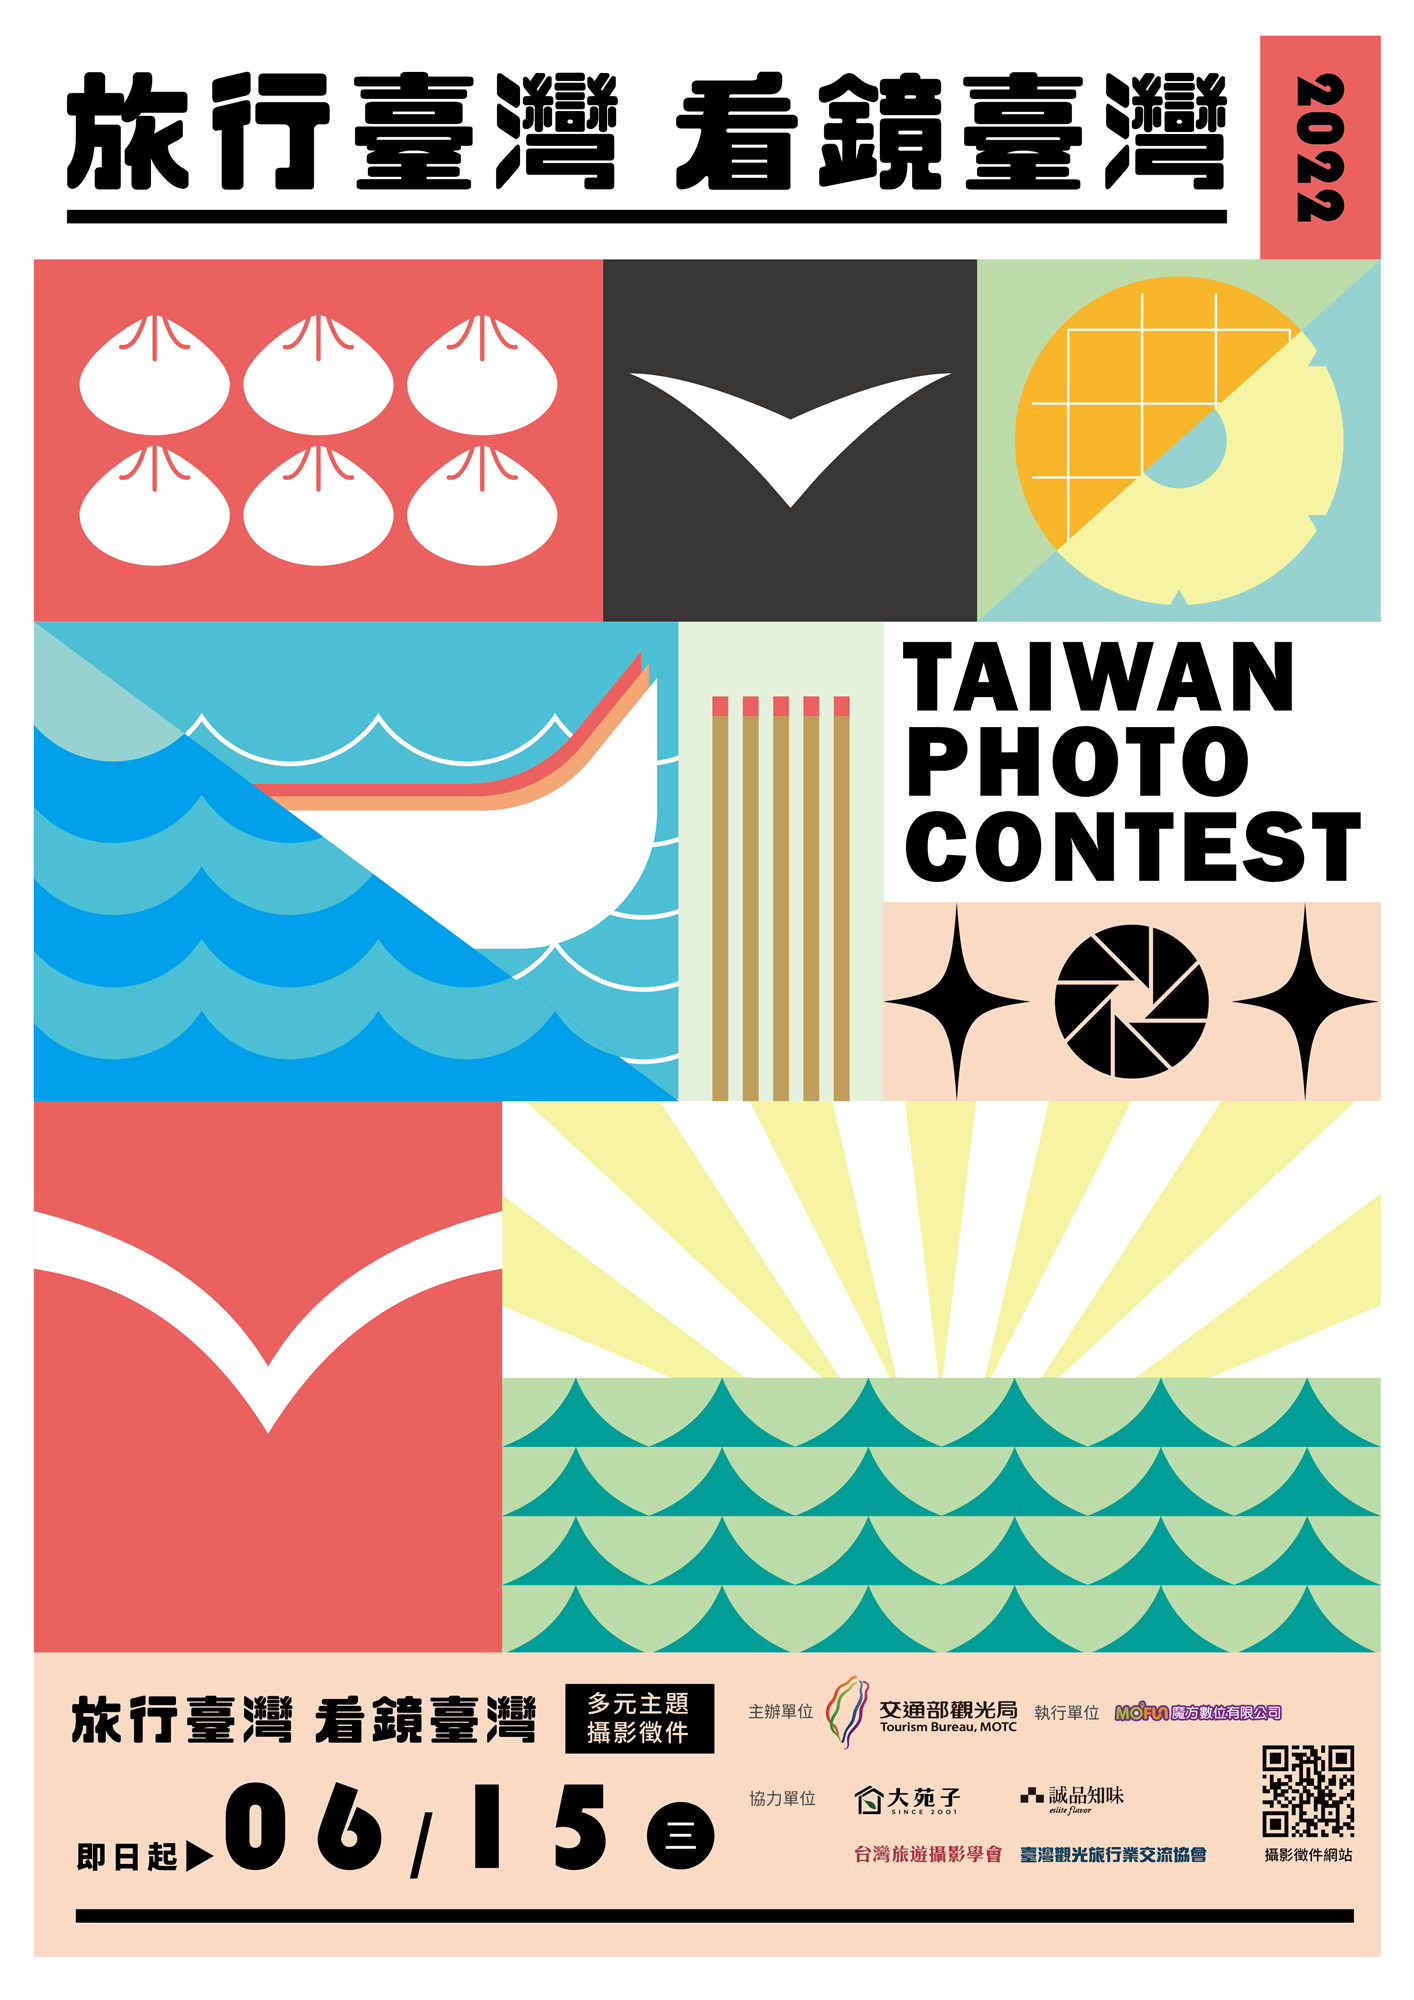 【Du lịch Đài Loan‧Nhìn trong Gương Đài Loan】 Sự kiện gọi điện chụp ảnh đa chủ đề Kaimira📸